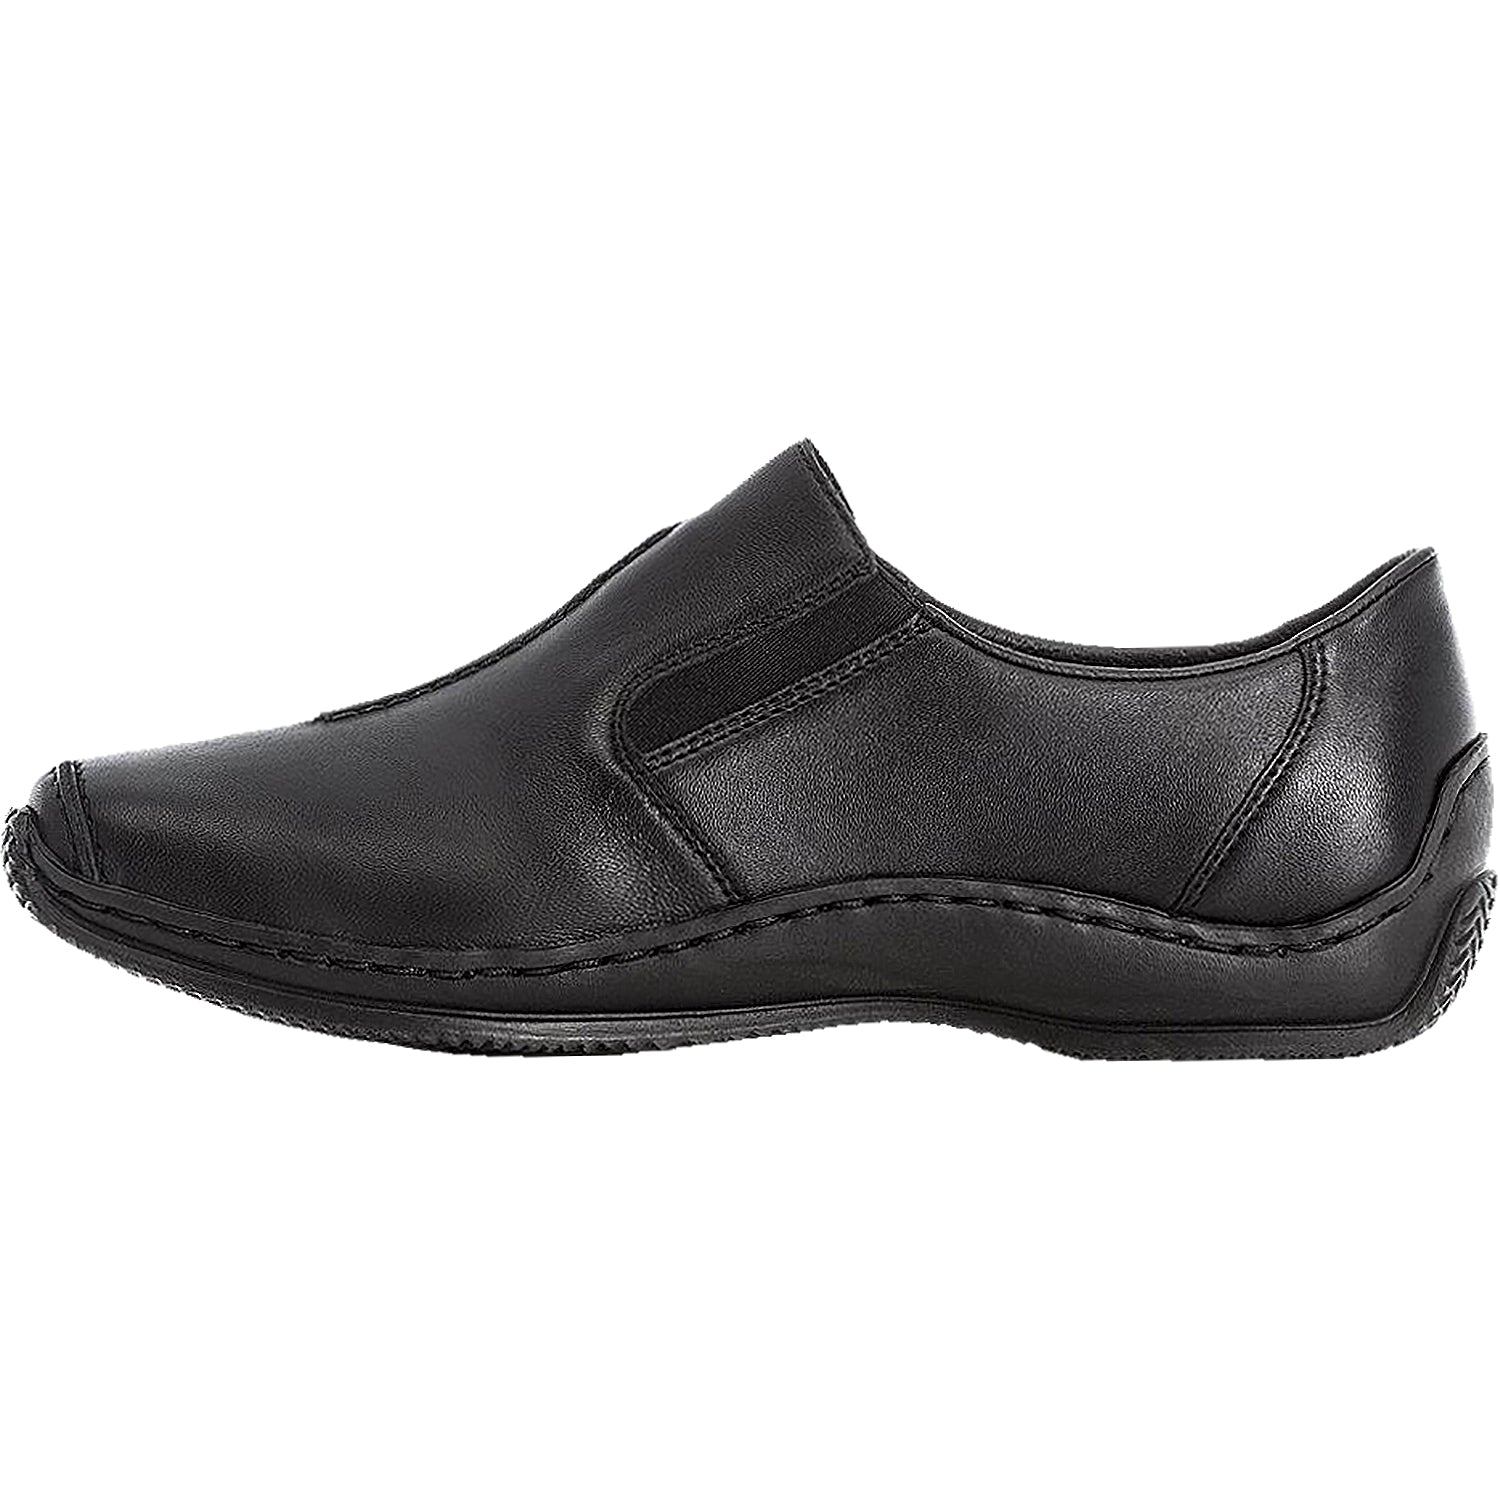 Rieker Celia | Women's Slip-On Shoes Footwear